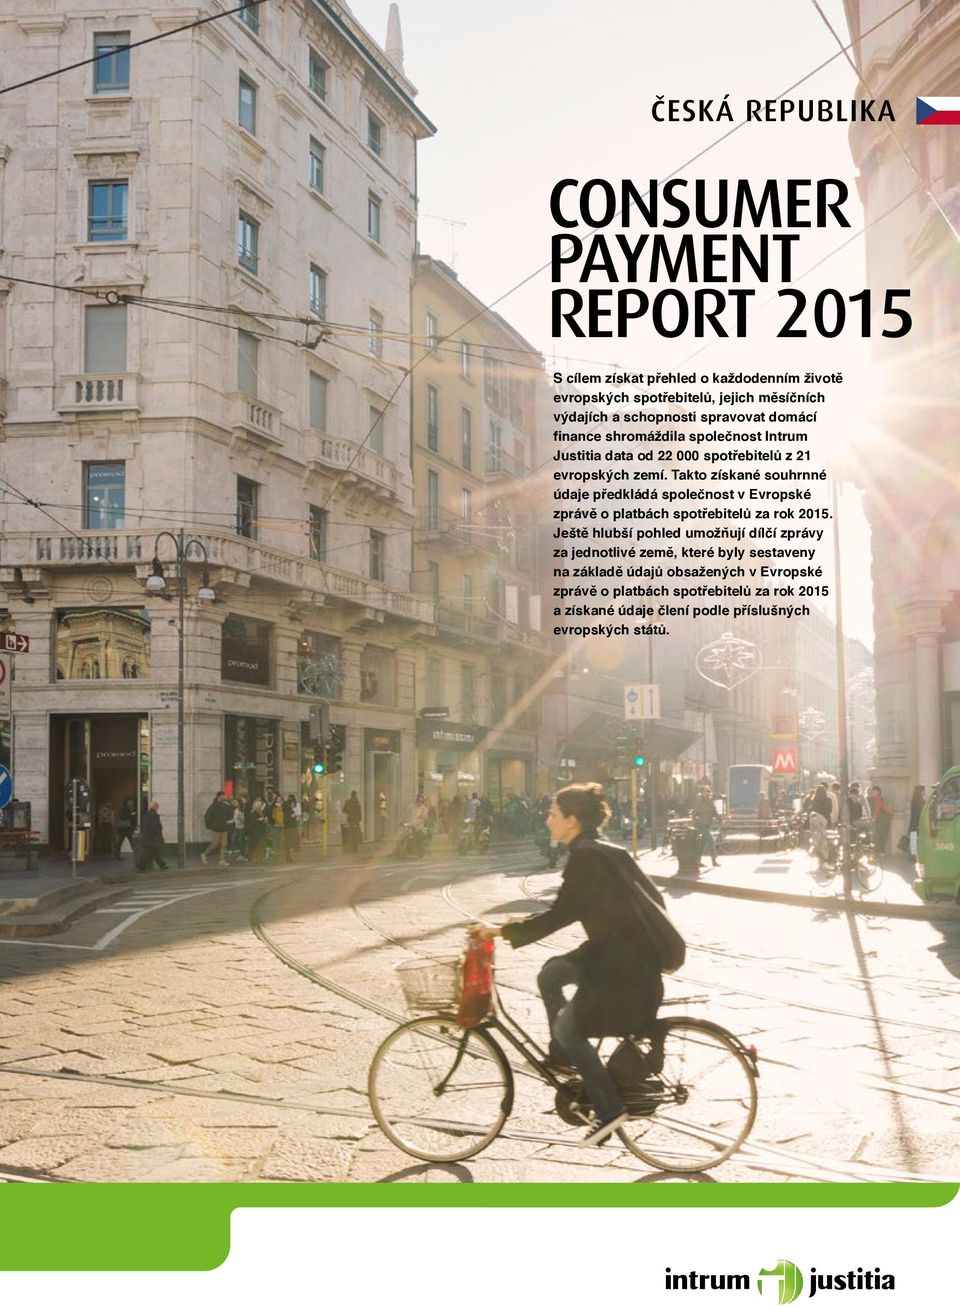 Takto získané souhrnné údaje předkládá společnost v Evropské zprávě o platbách spotřebitelů za rok 5.